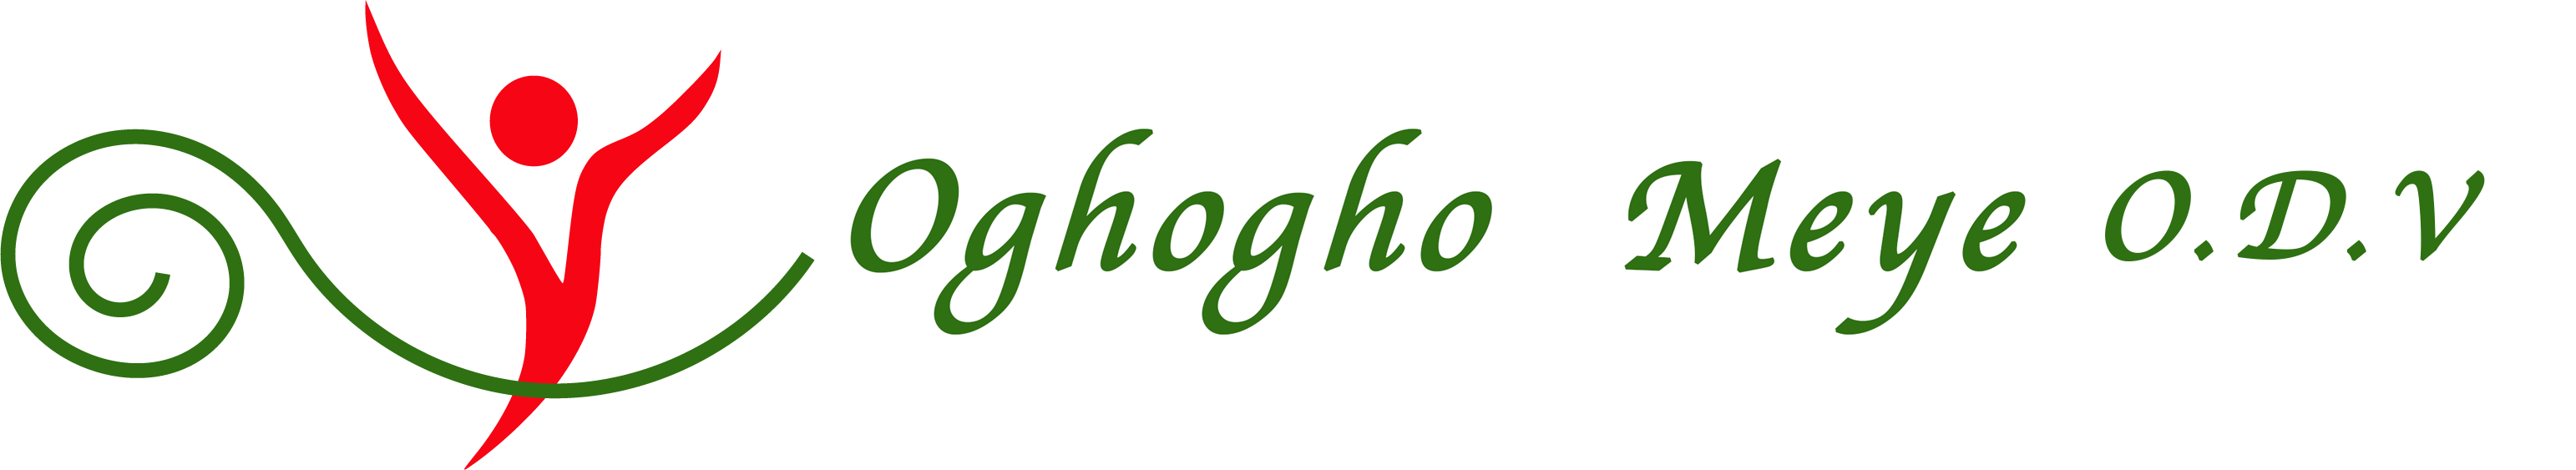 Associazione Oghogho Meye onlus